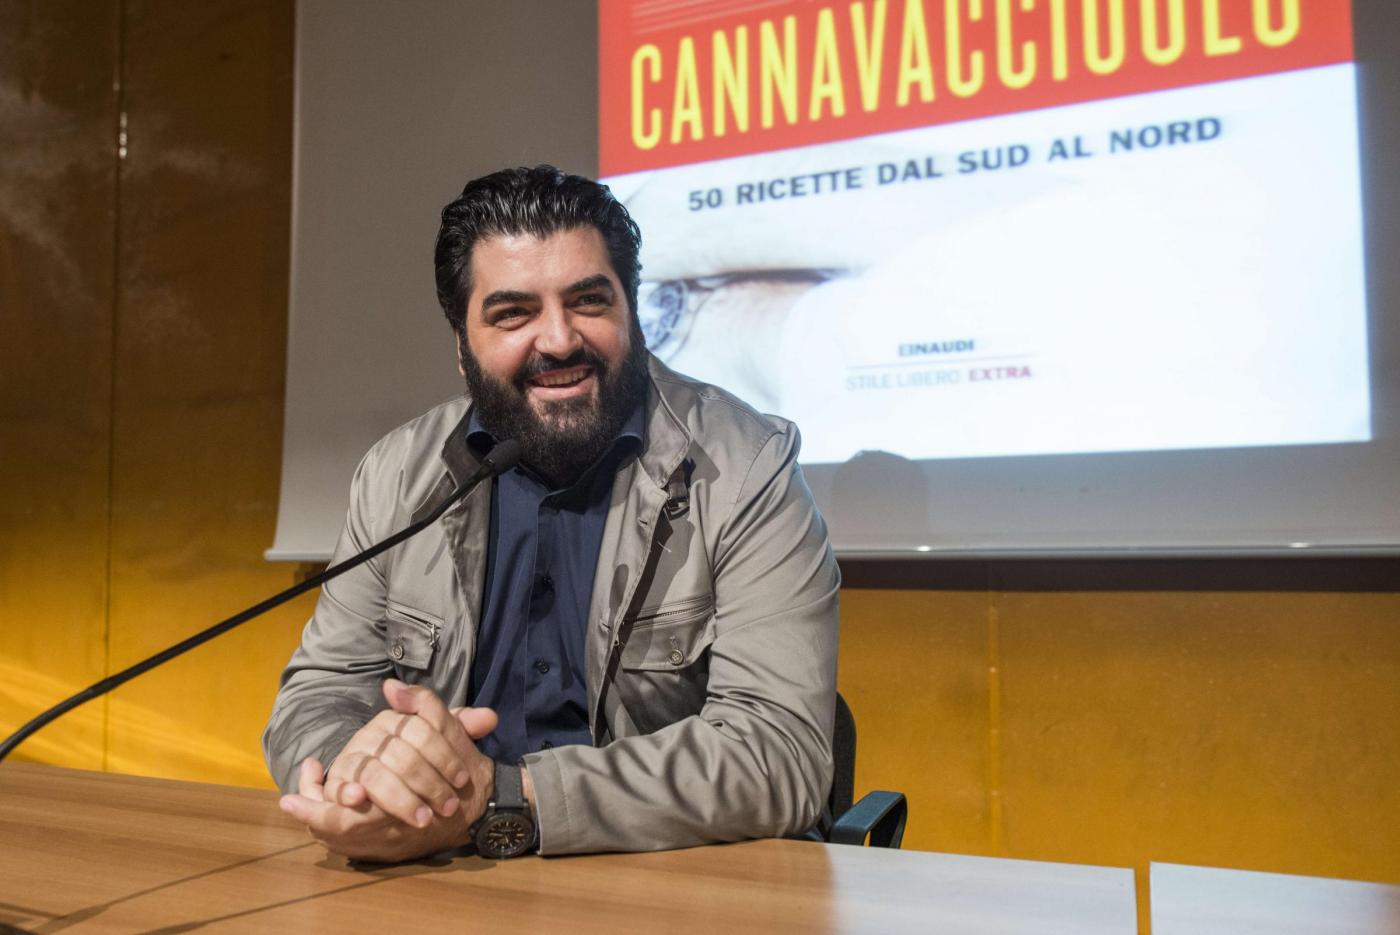 Antonino Cannavacciuolo zittisce uno spettatore maligno al Salone del Libro